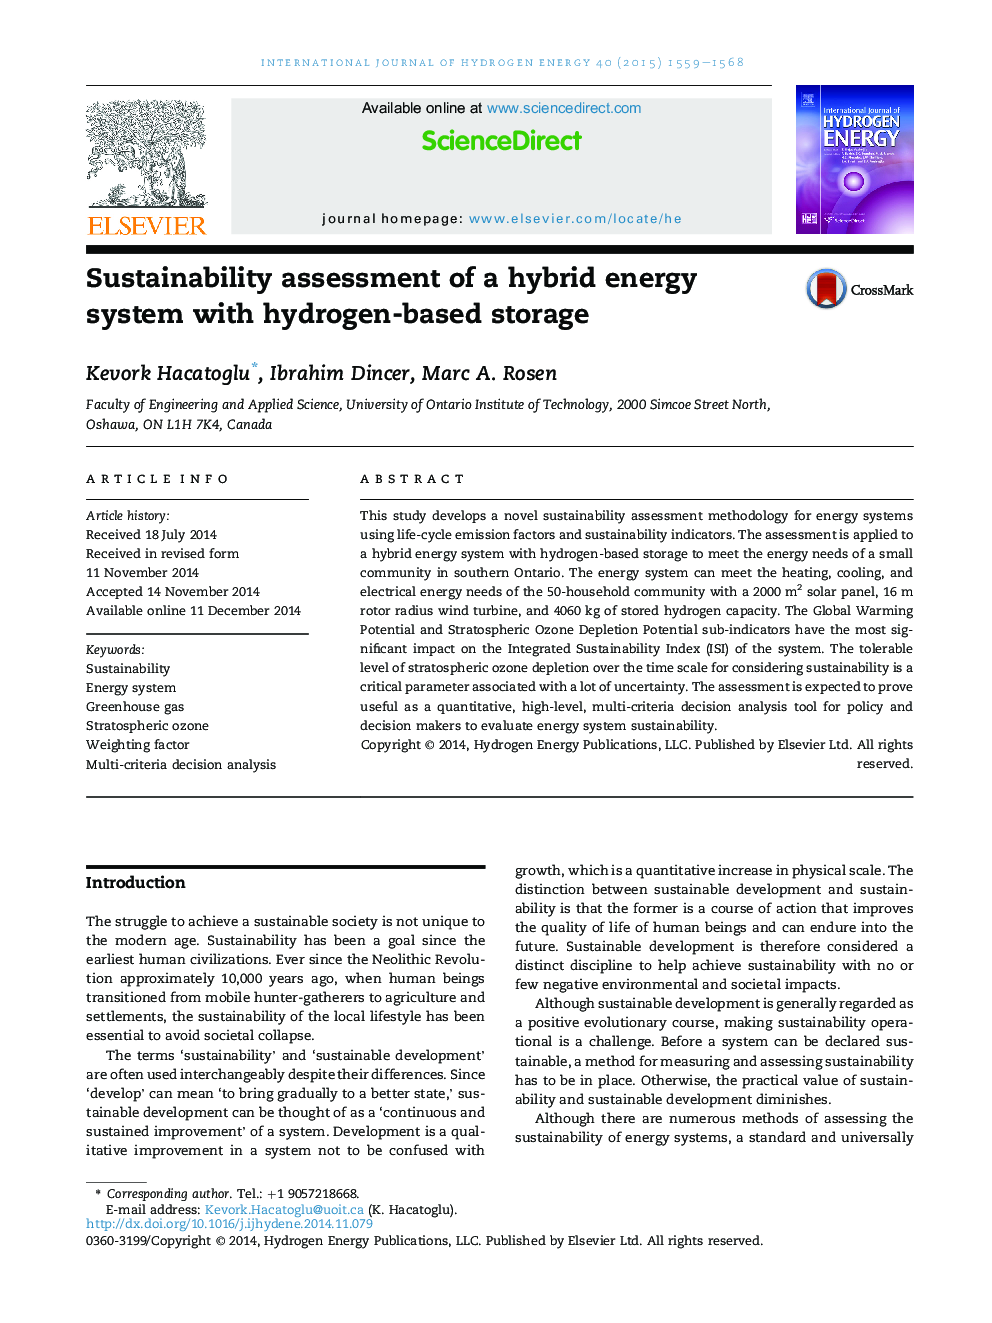 ارزیابی پایداری یک سیستم انرژی ترکیبی با ذخیره سازی مبتنی بر هیدروژن 